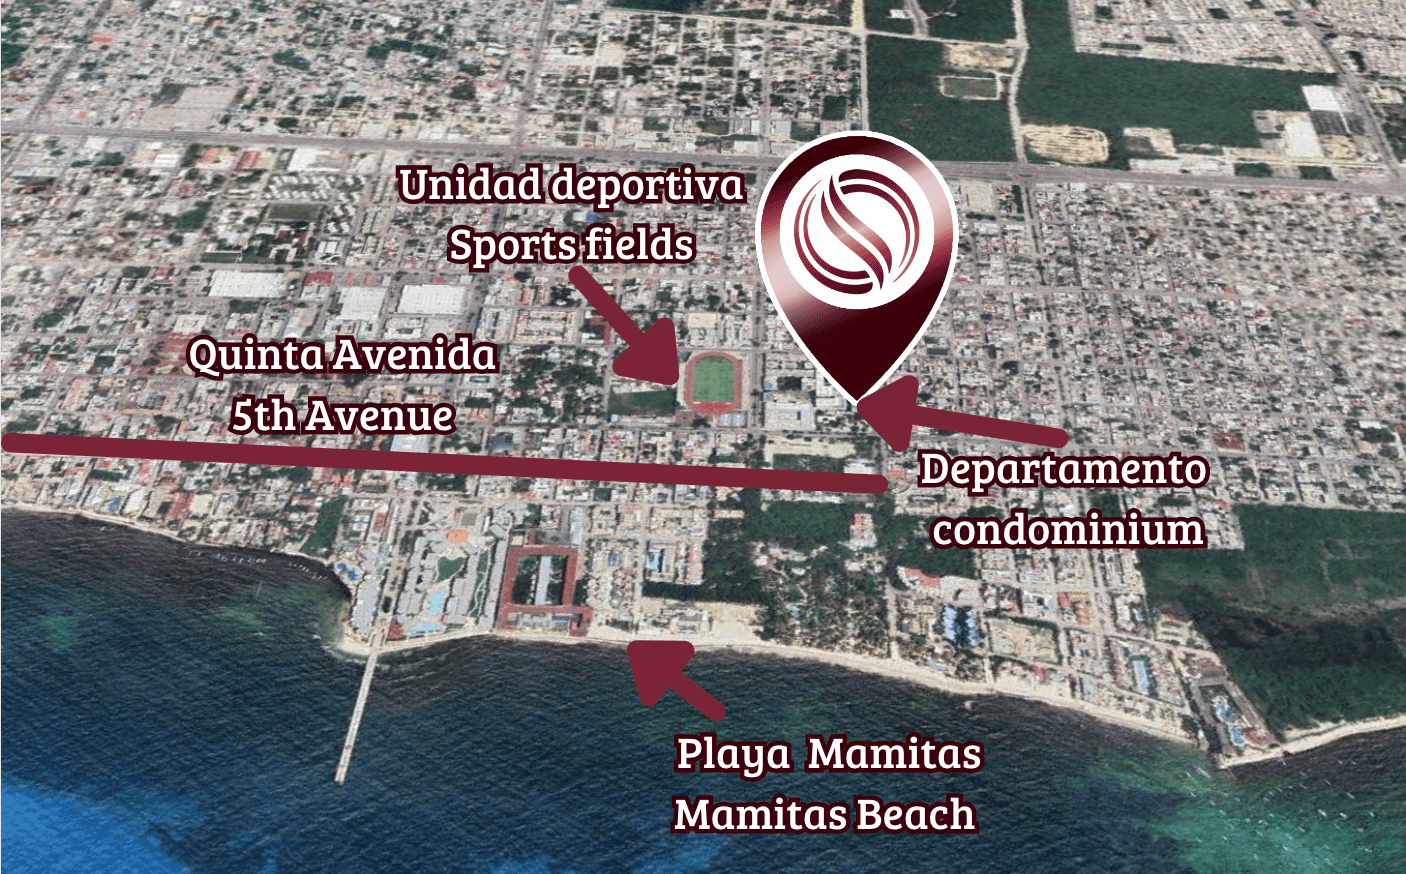 Condominio de lujo a 200 metros del mar, con club de playa, alberca, jacuzzi 100 metros de la Quinta Avenida, con servicios de hotel, concie